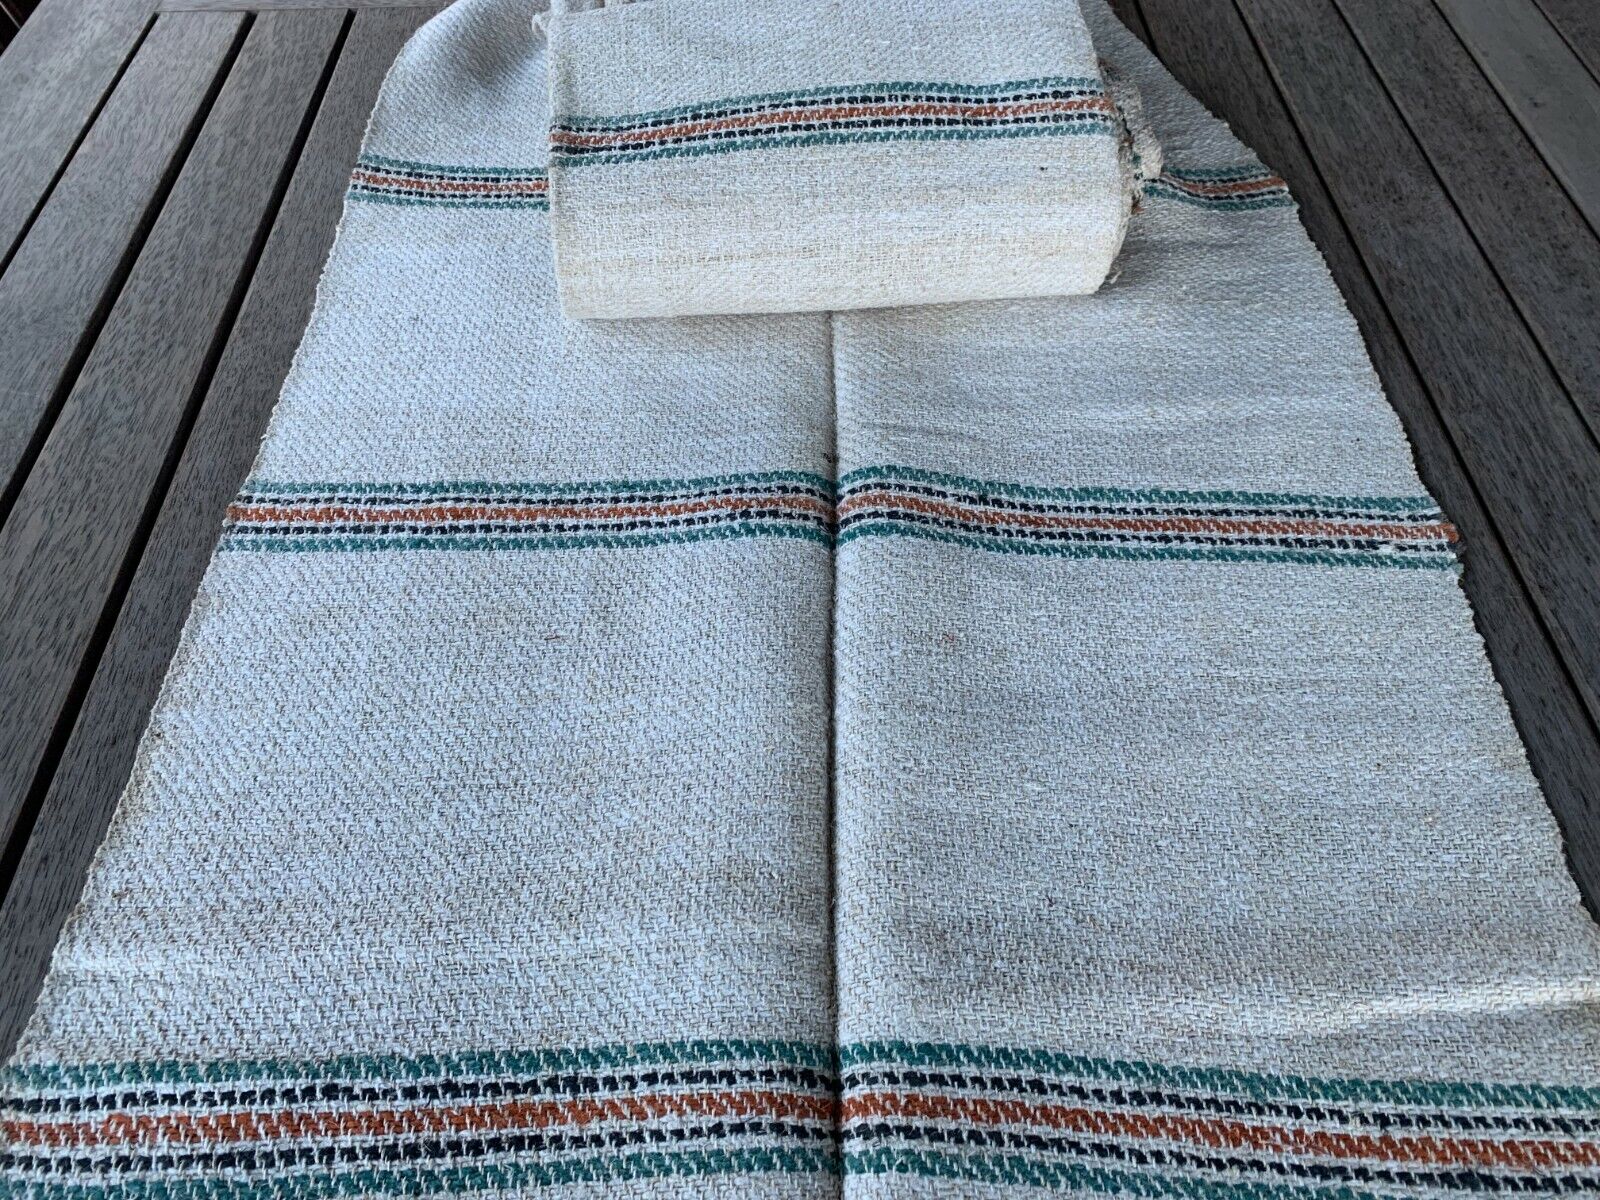 Hand Woven Fabric Homespun Linen Hemp Upholstery Antique Primitive Roll 5.5 yd